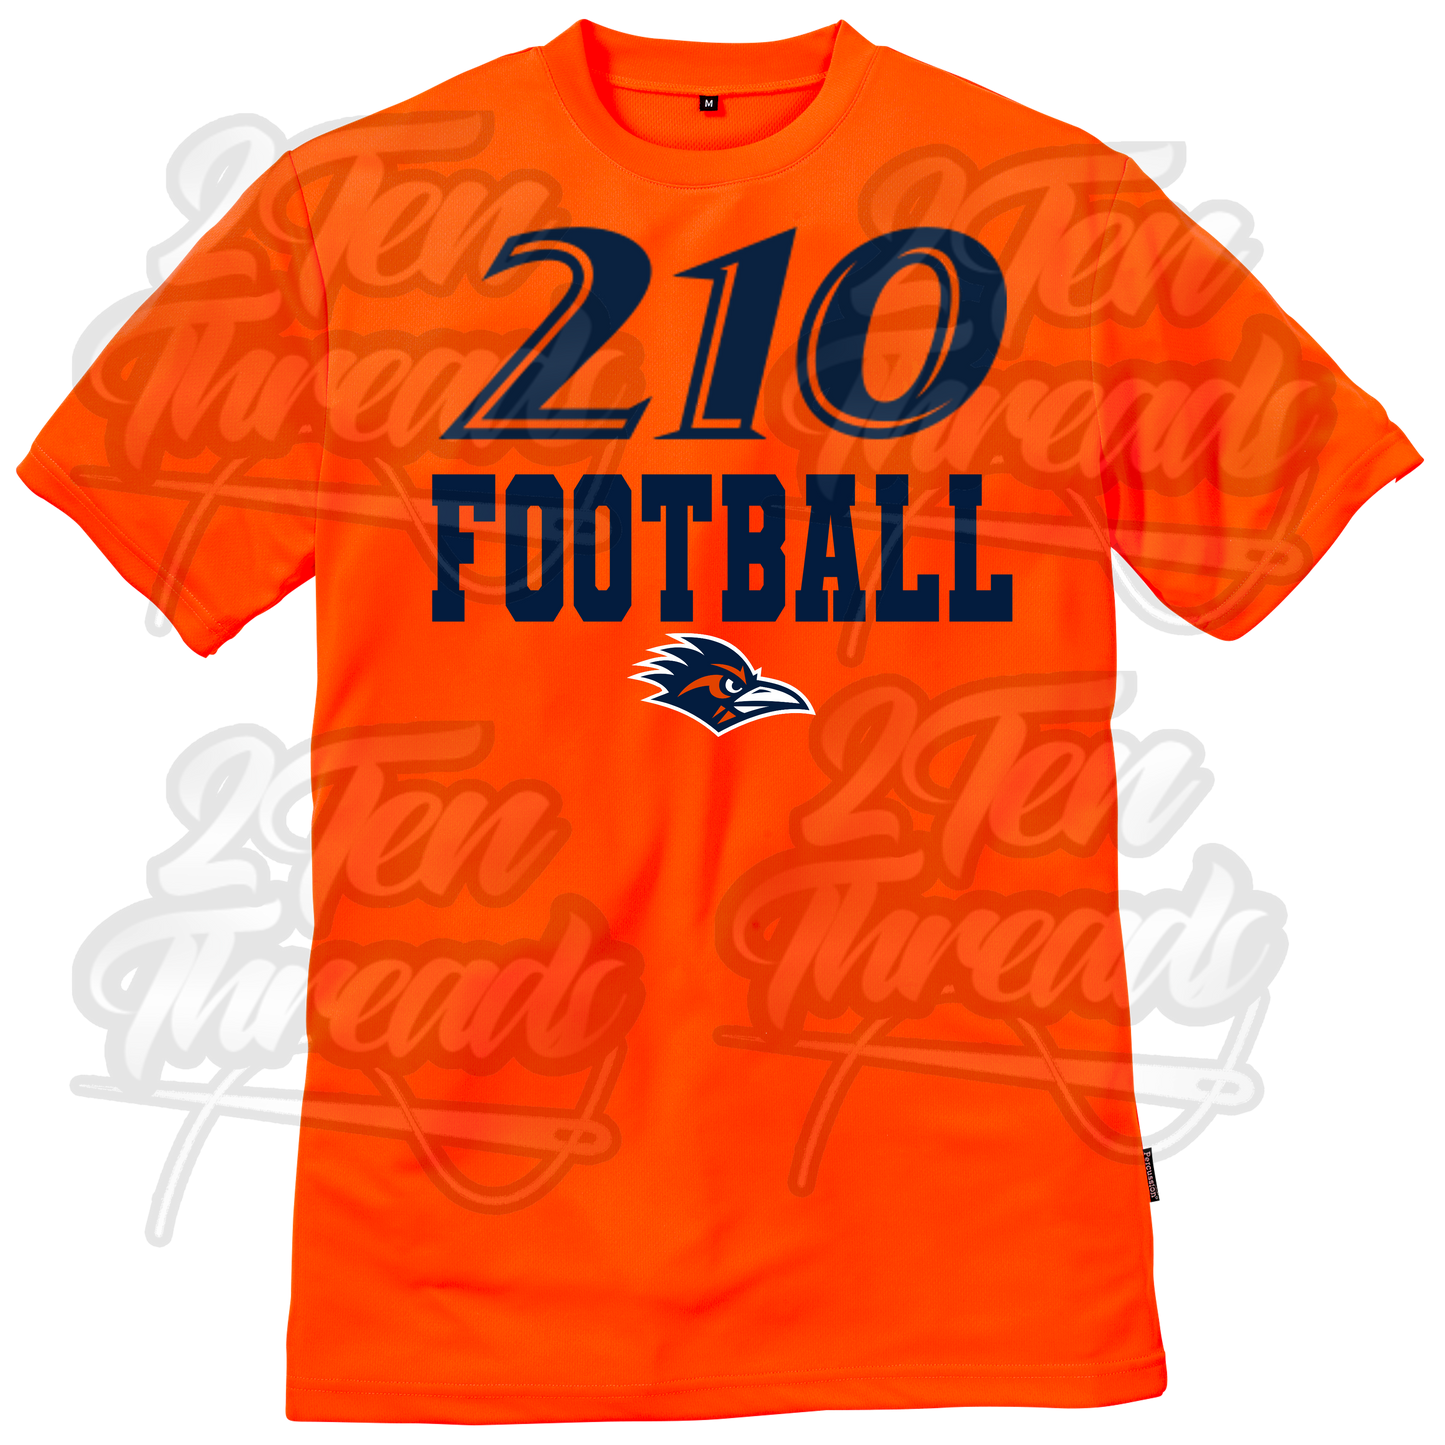 210 Football Shirt!